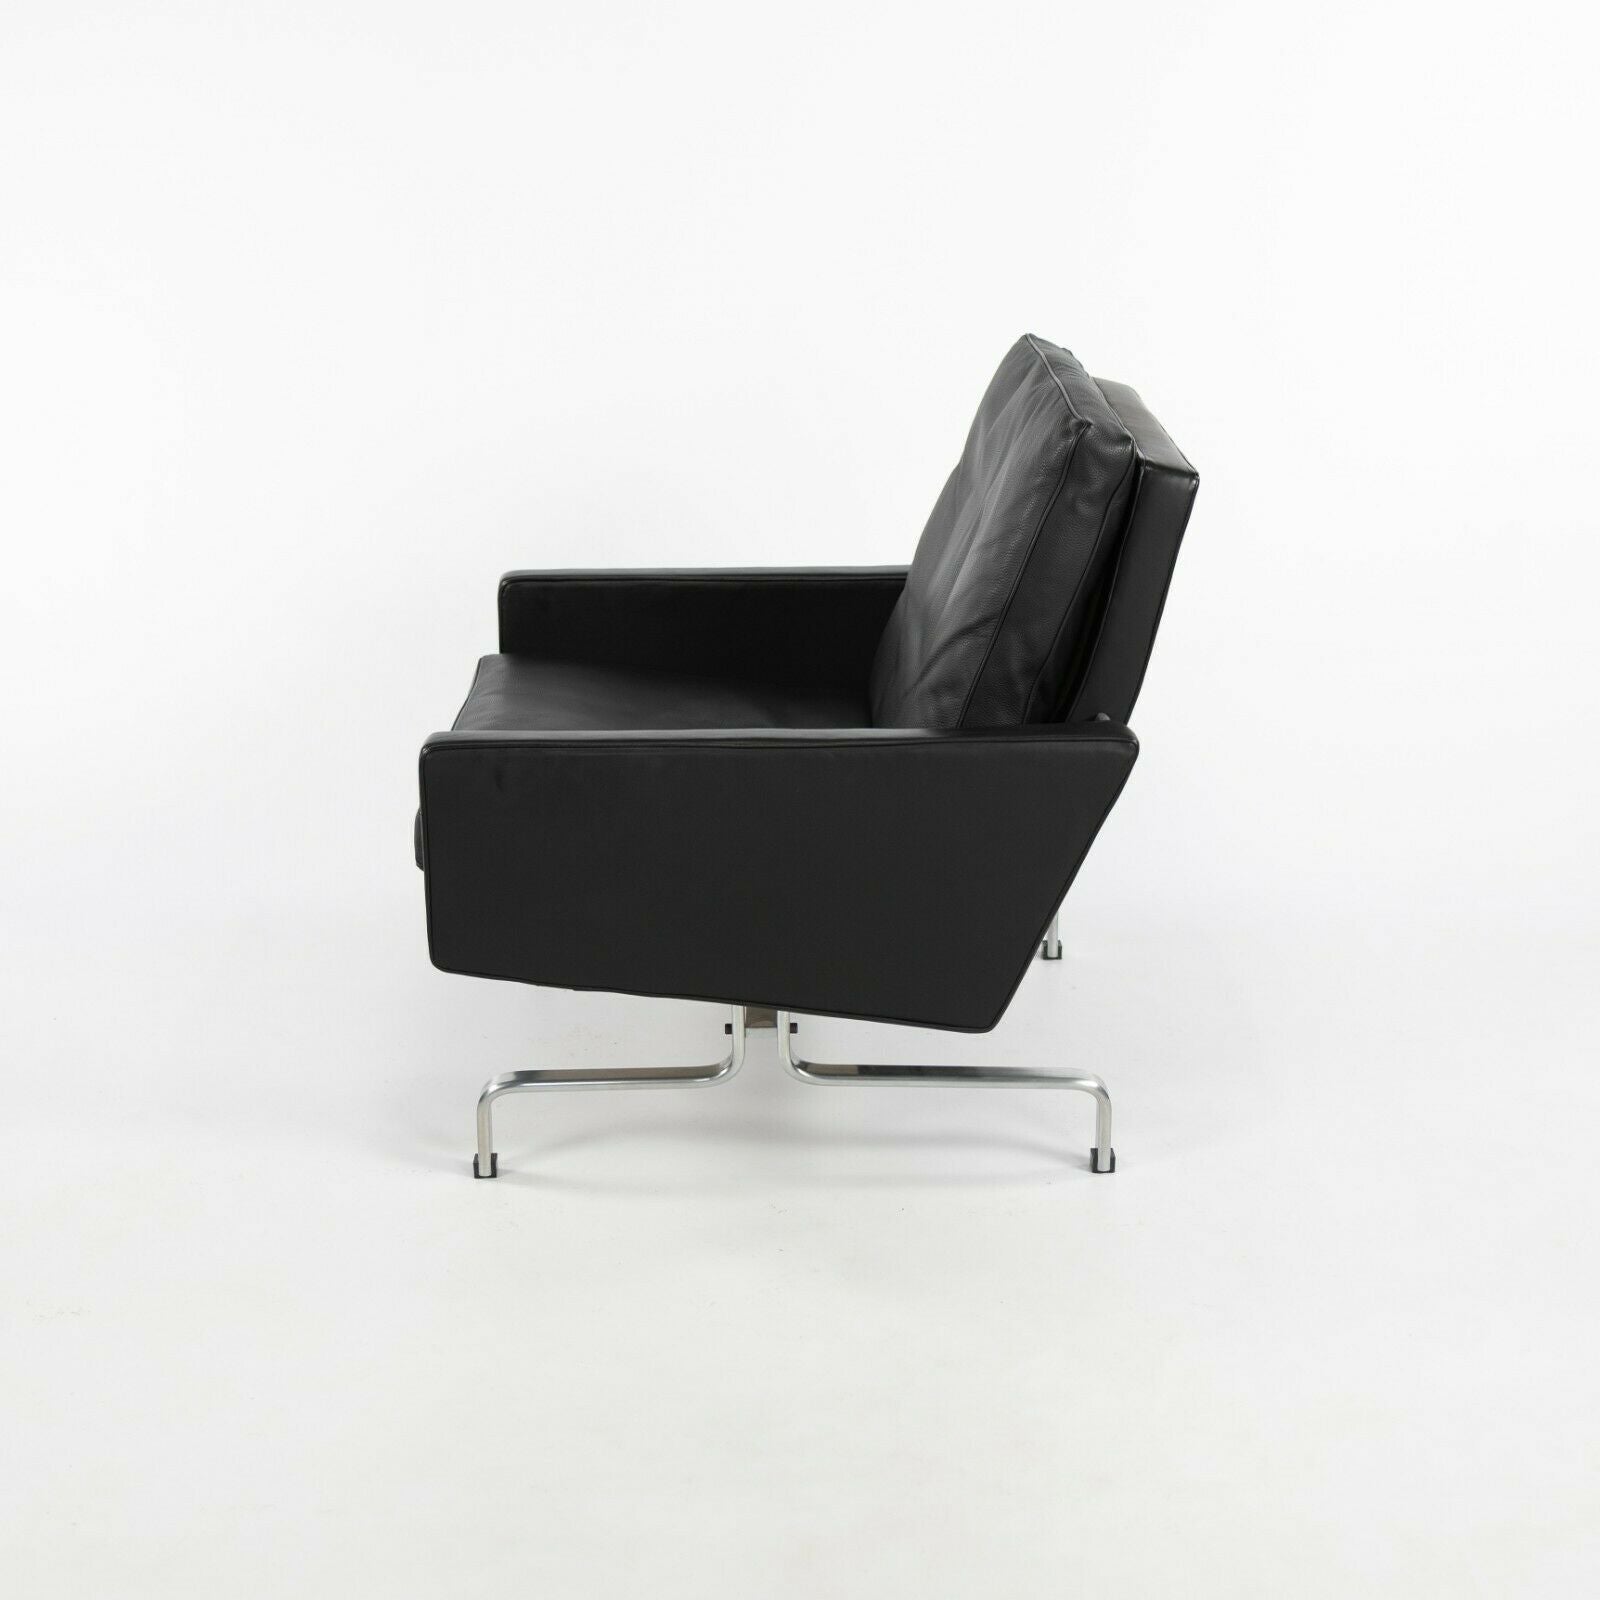 2010 Pair of Poul Kjaerholm for Fritz Hansen PK31 Easy Lounge Chair Black Leather